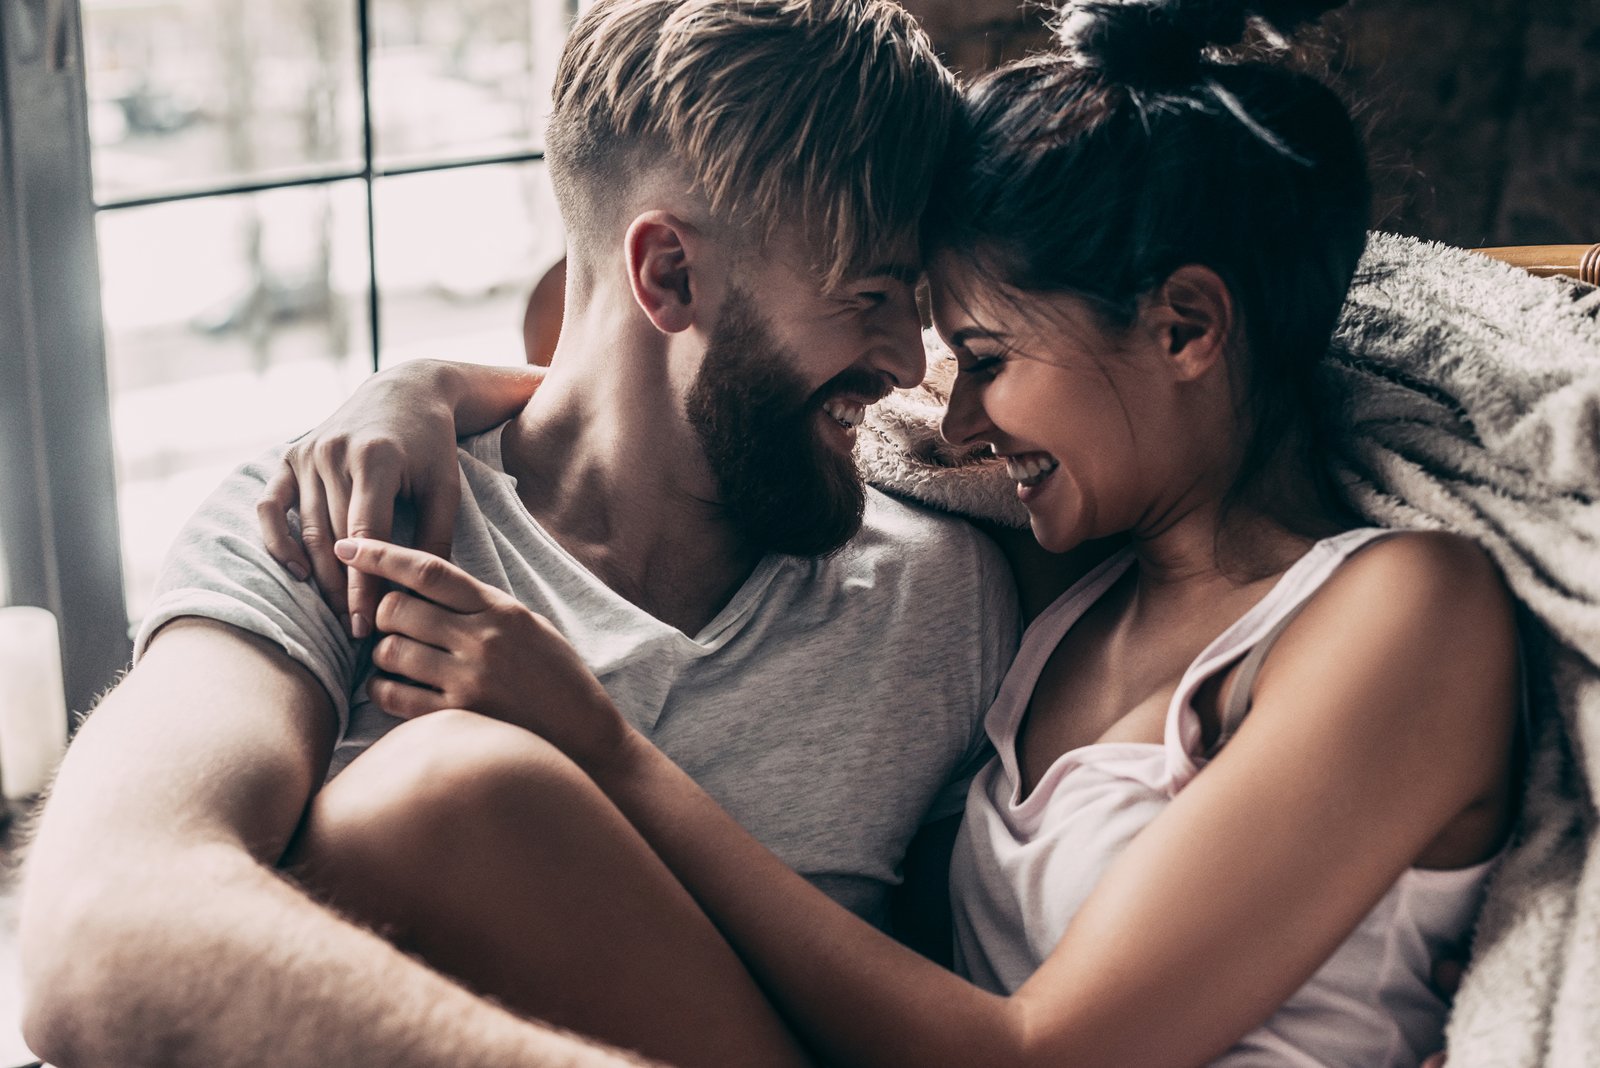 Kyssepar - sextips mod kedsomhed i lockdown